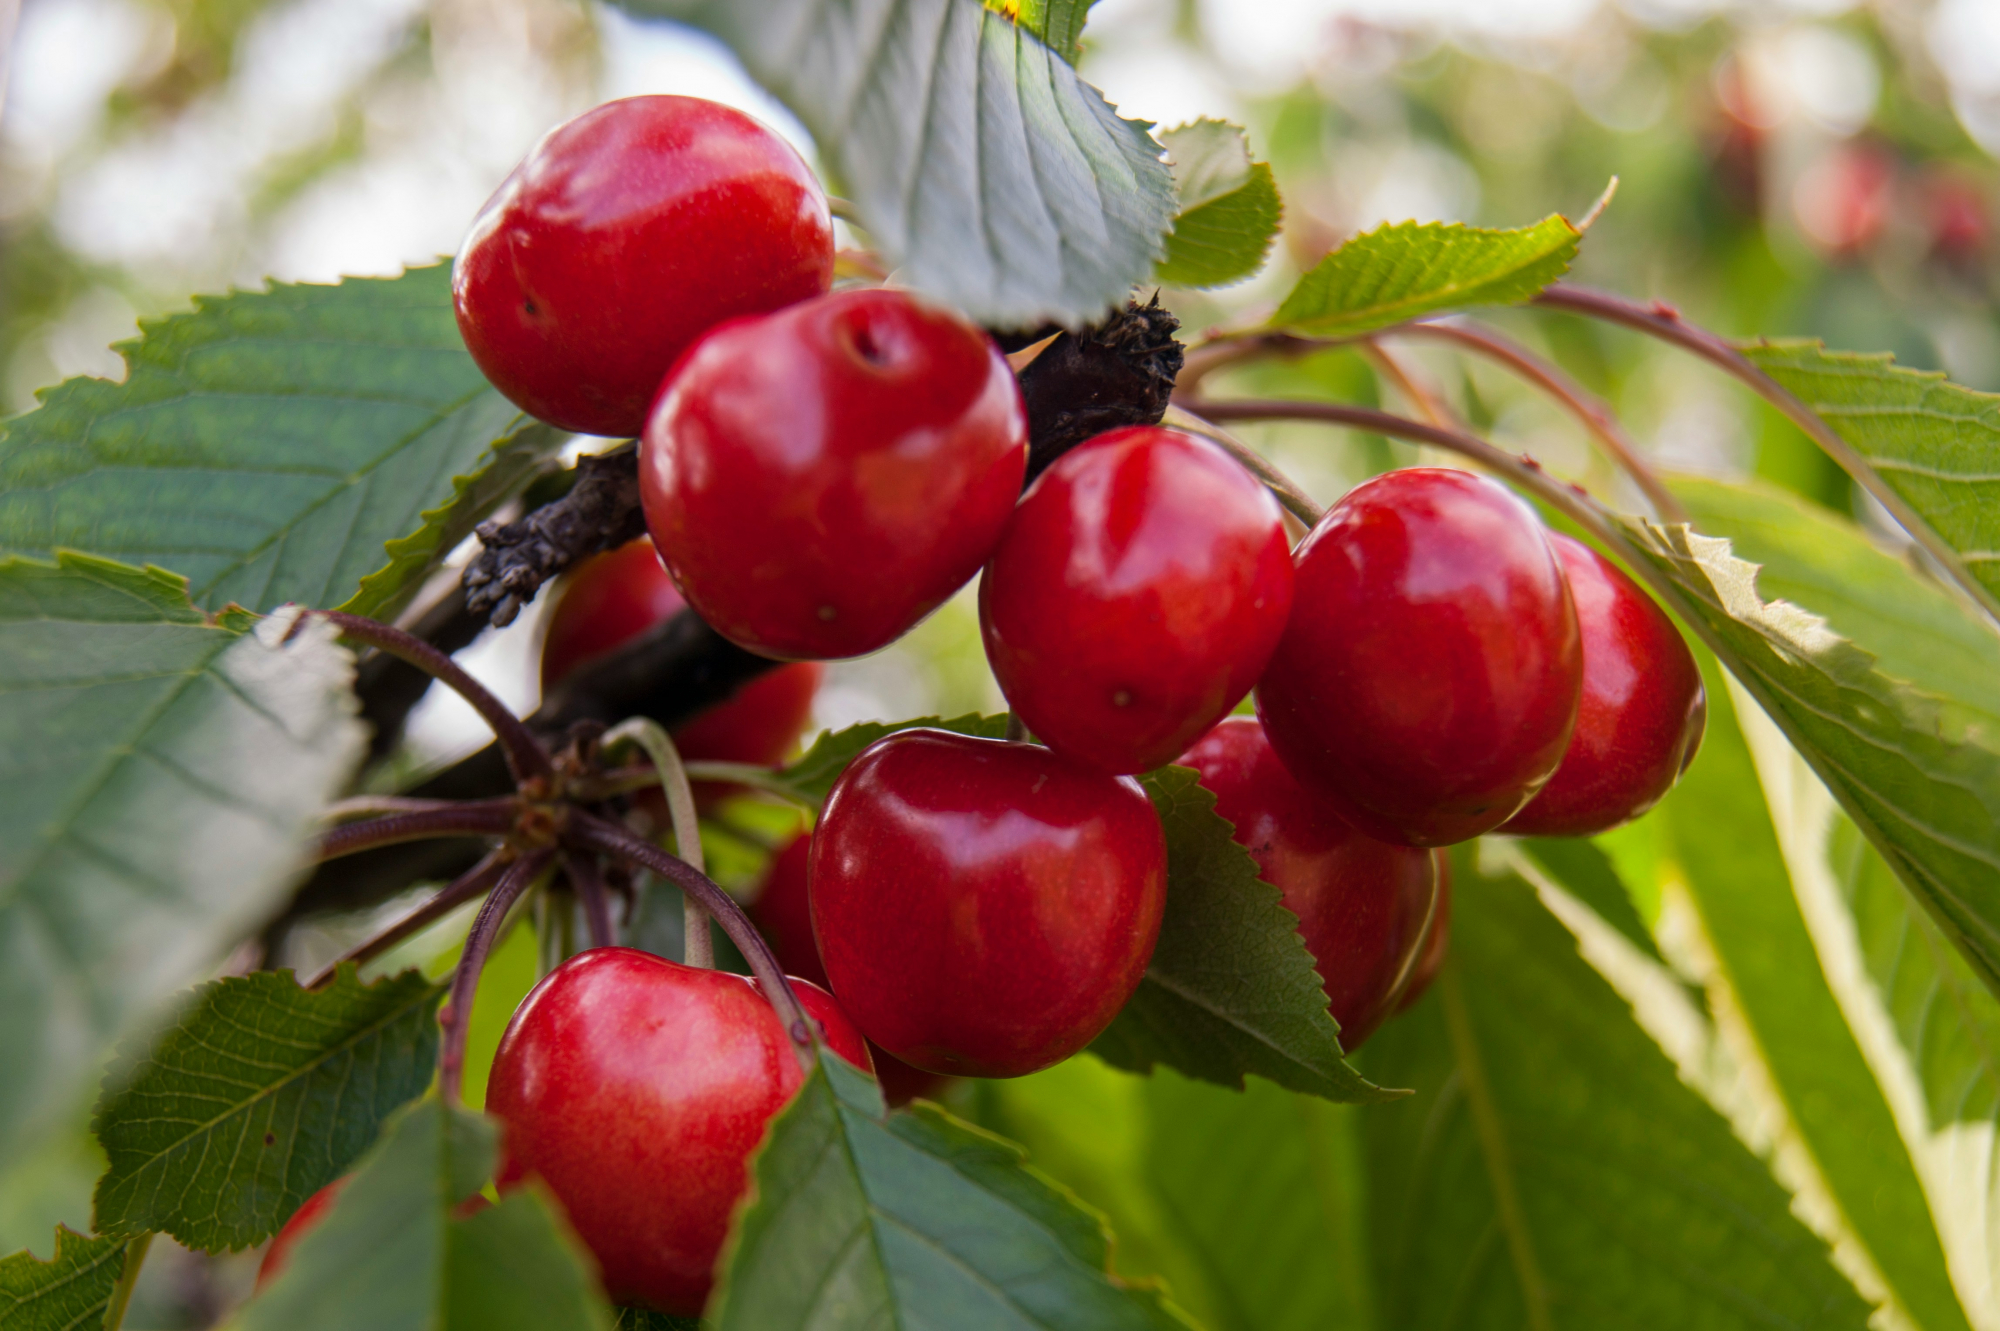 découvrez des informations fascinantes sur les cerisiers et leurs variétés, leur culture, leur entretien et bien plus encore avec cherry tree.